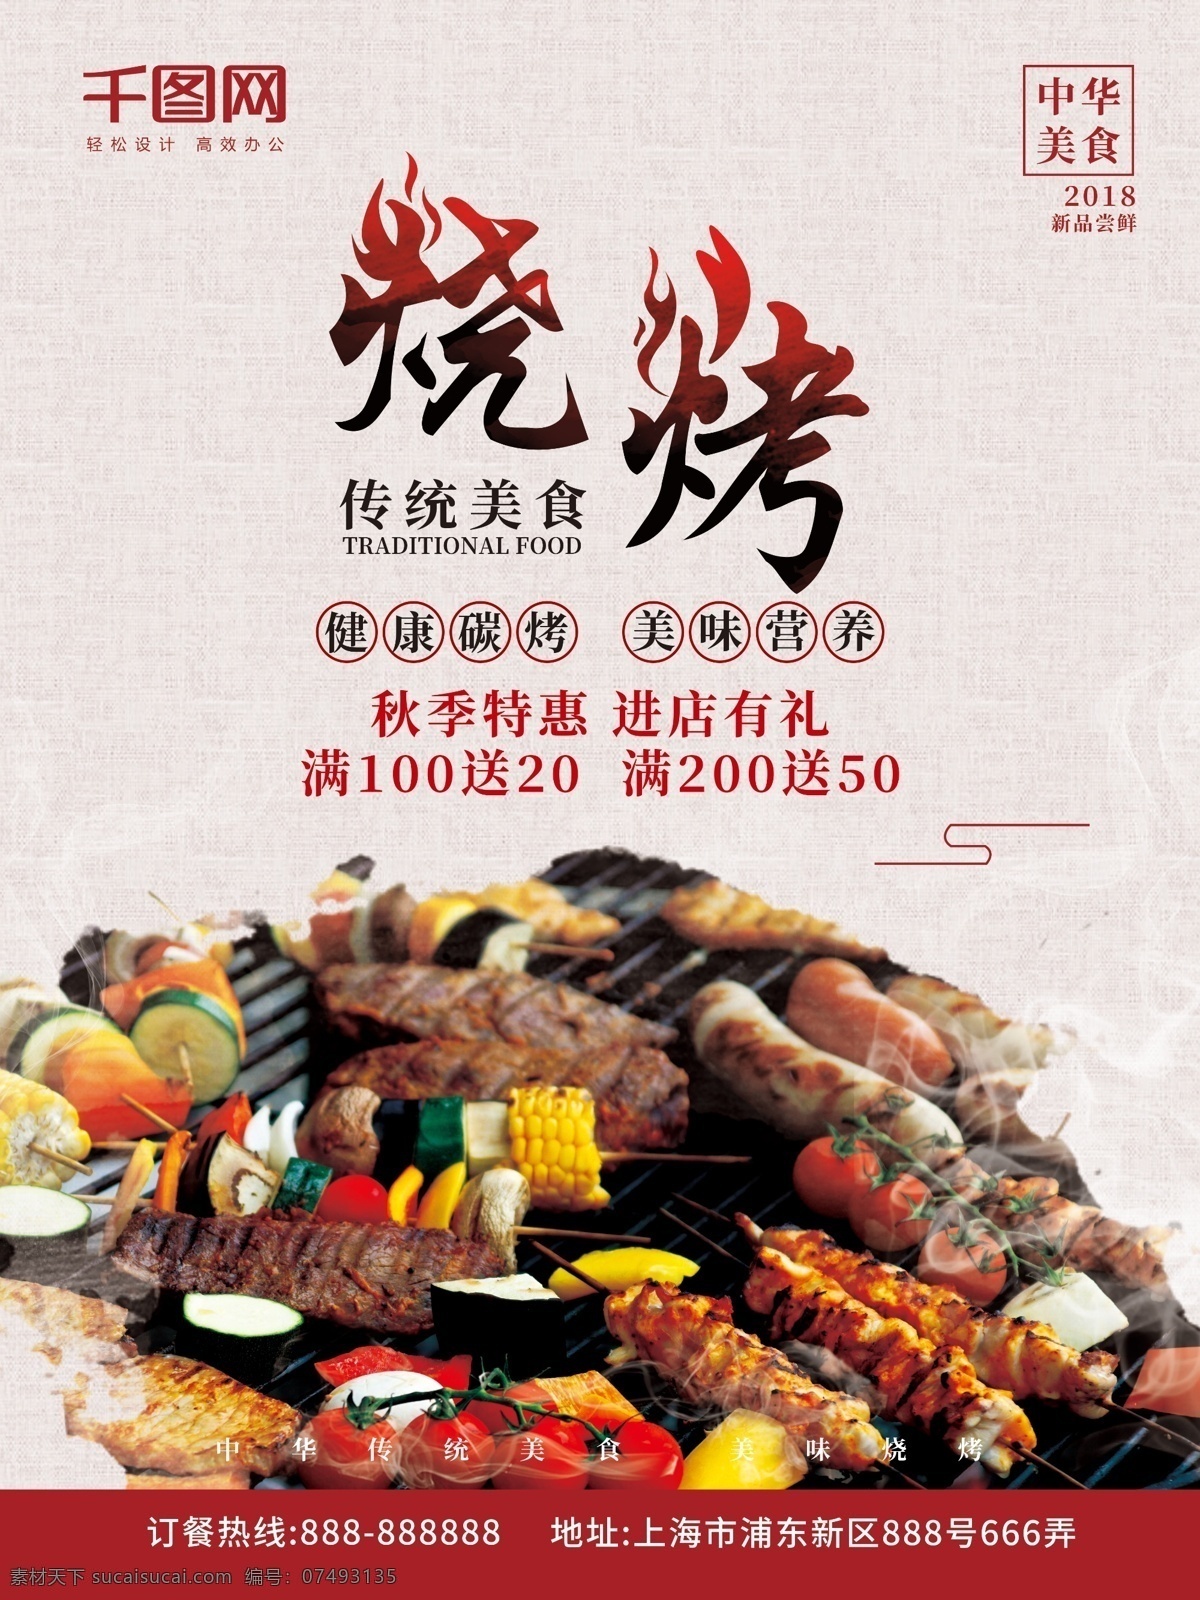 中国 水墨 风 烧烤 传统 美食 餐饮 宣传 促销 海报 中国风 促销海报 美食海报 水墨风 传统美食